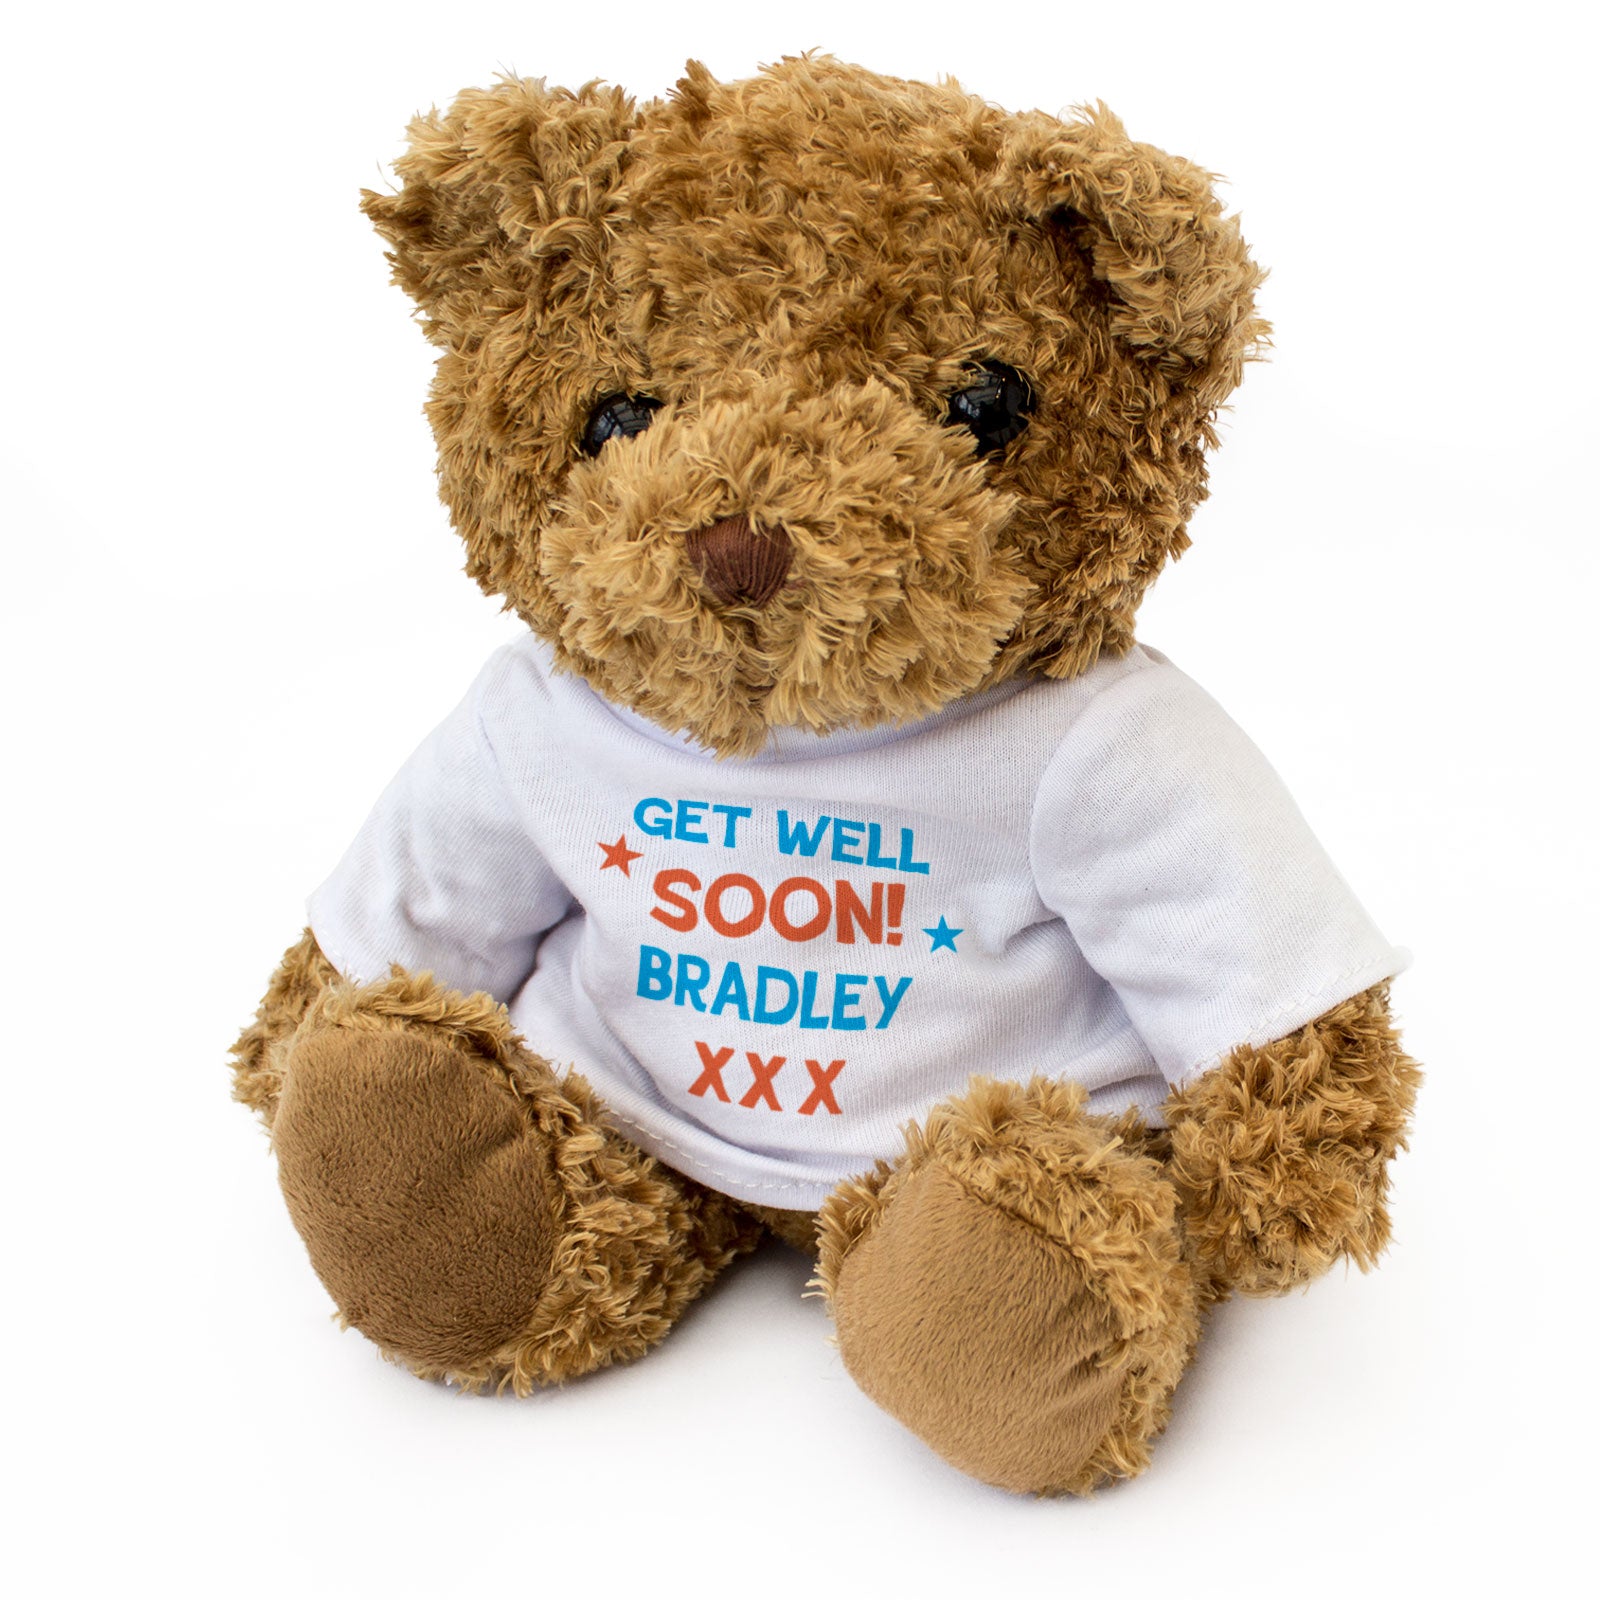 Get Well Soon Bradley - Teddy Bear